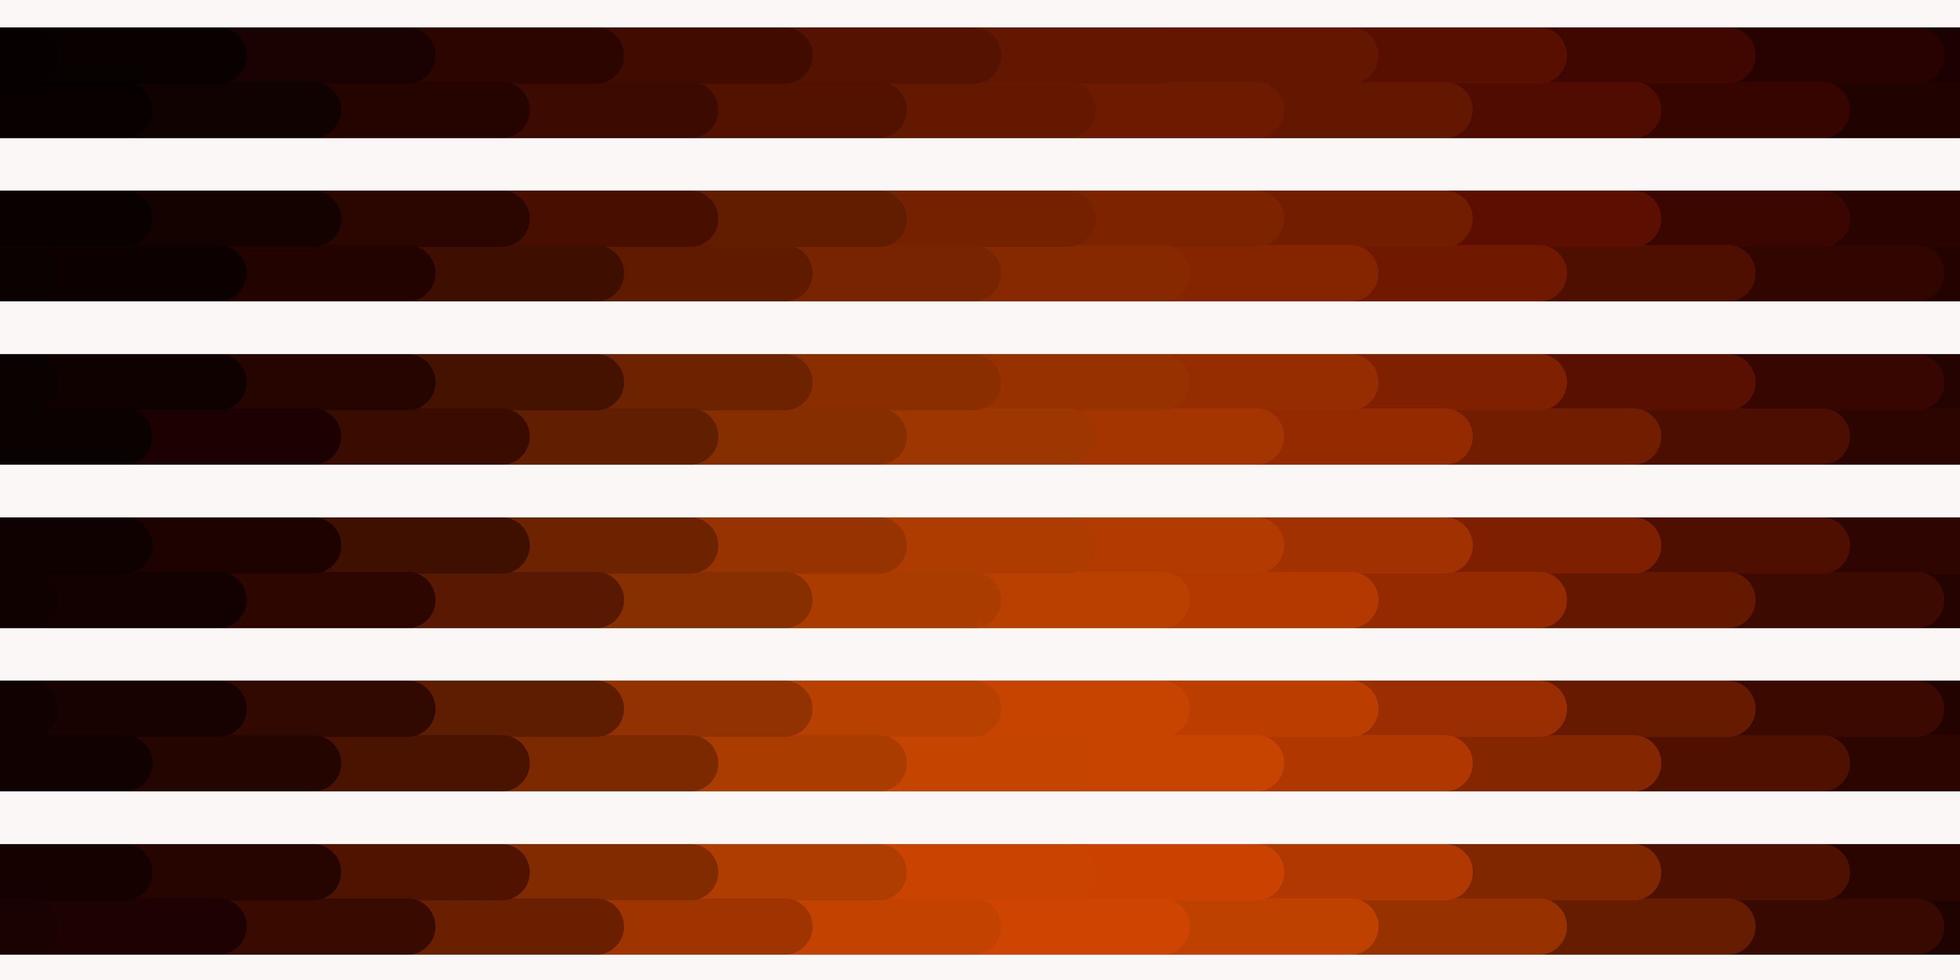 Dark Orange vector backdrop with lines.